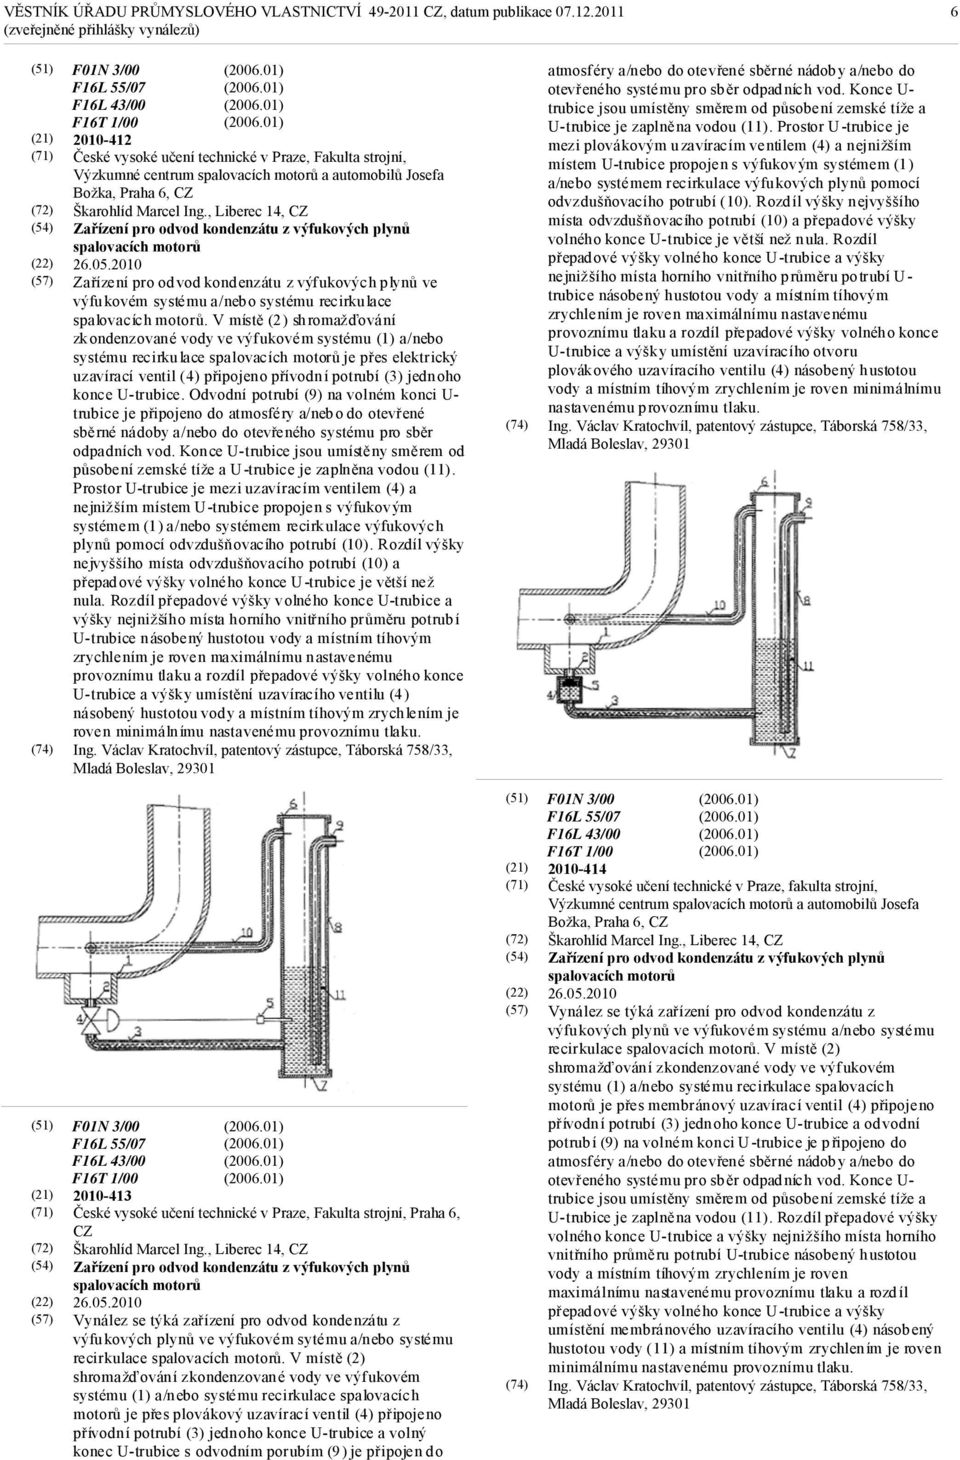 2010 Zařízení pro odvod kondenzátu z výfukových plynů ve výfukovém systému a/nebo systému recirkulace spalovacích motorů.